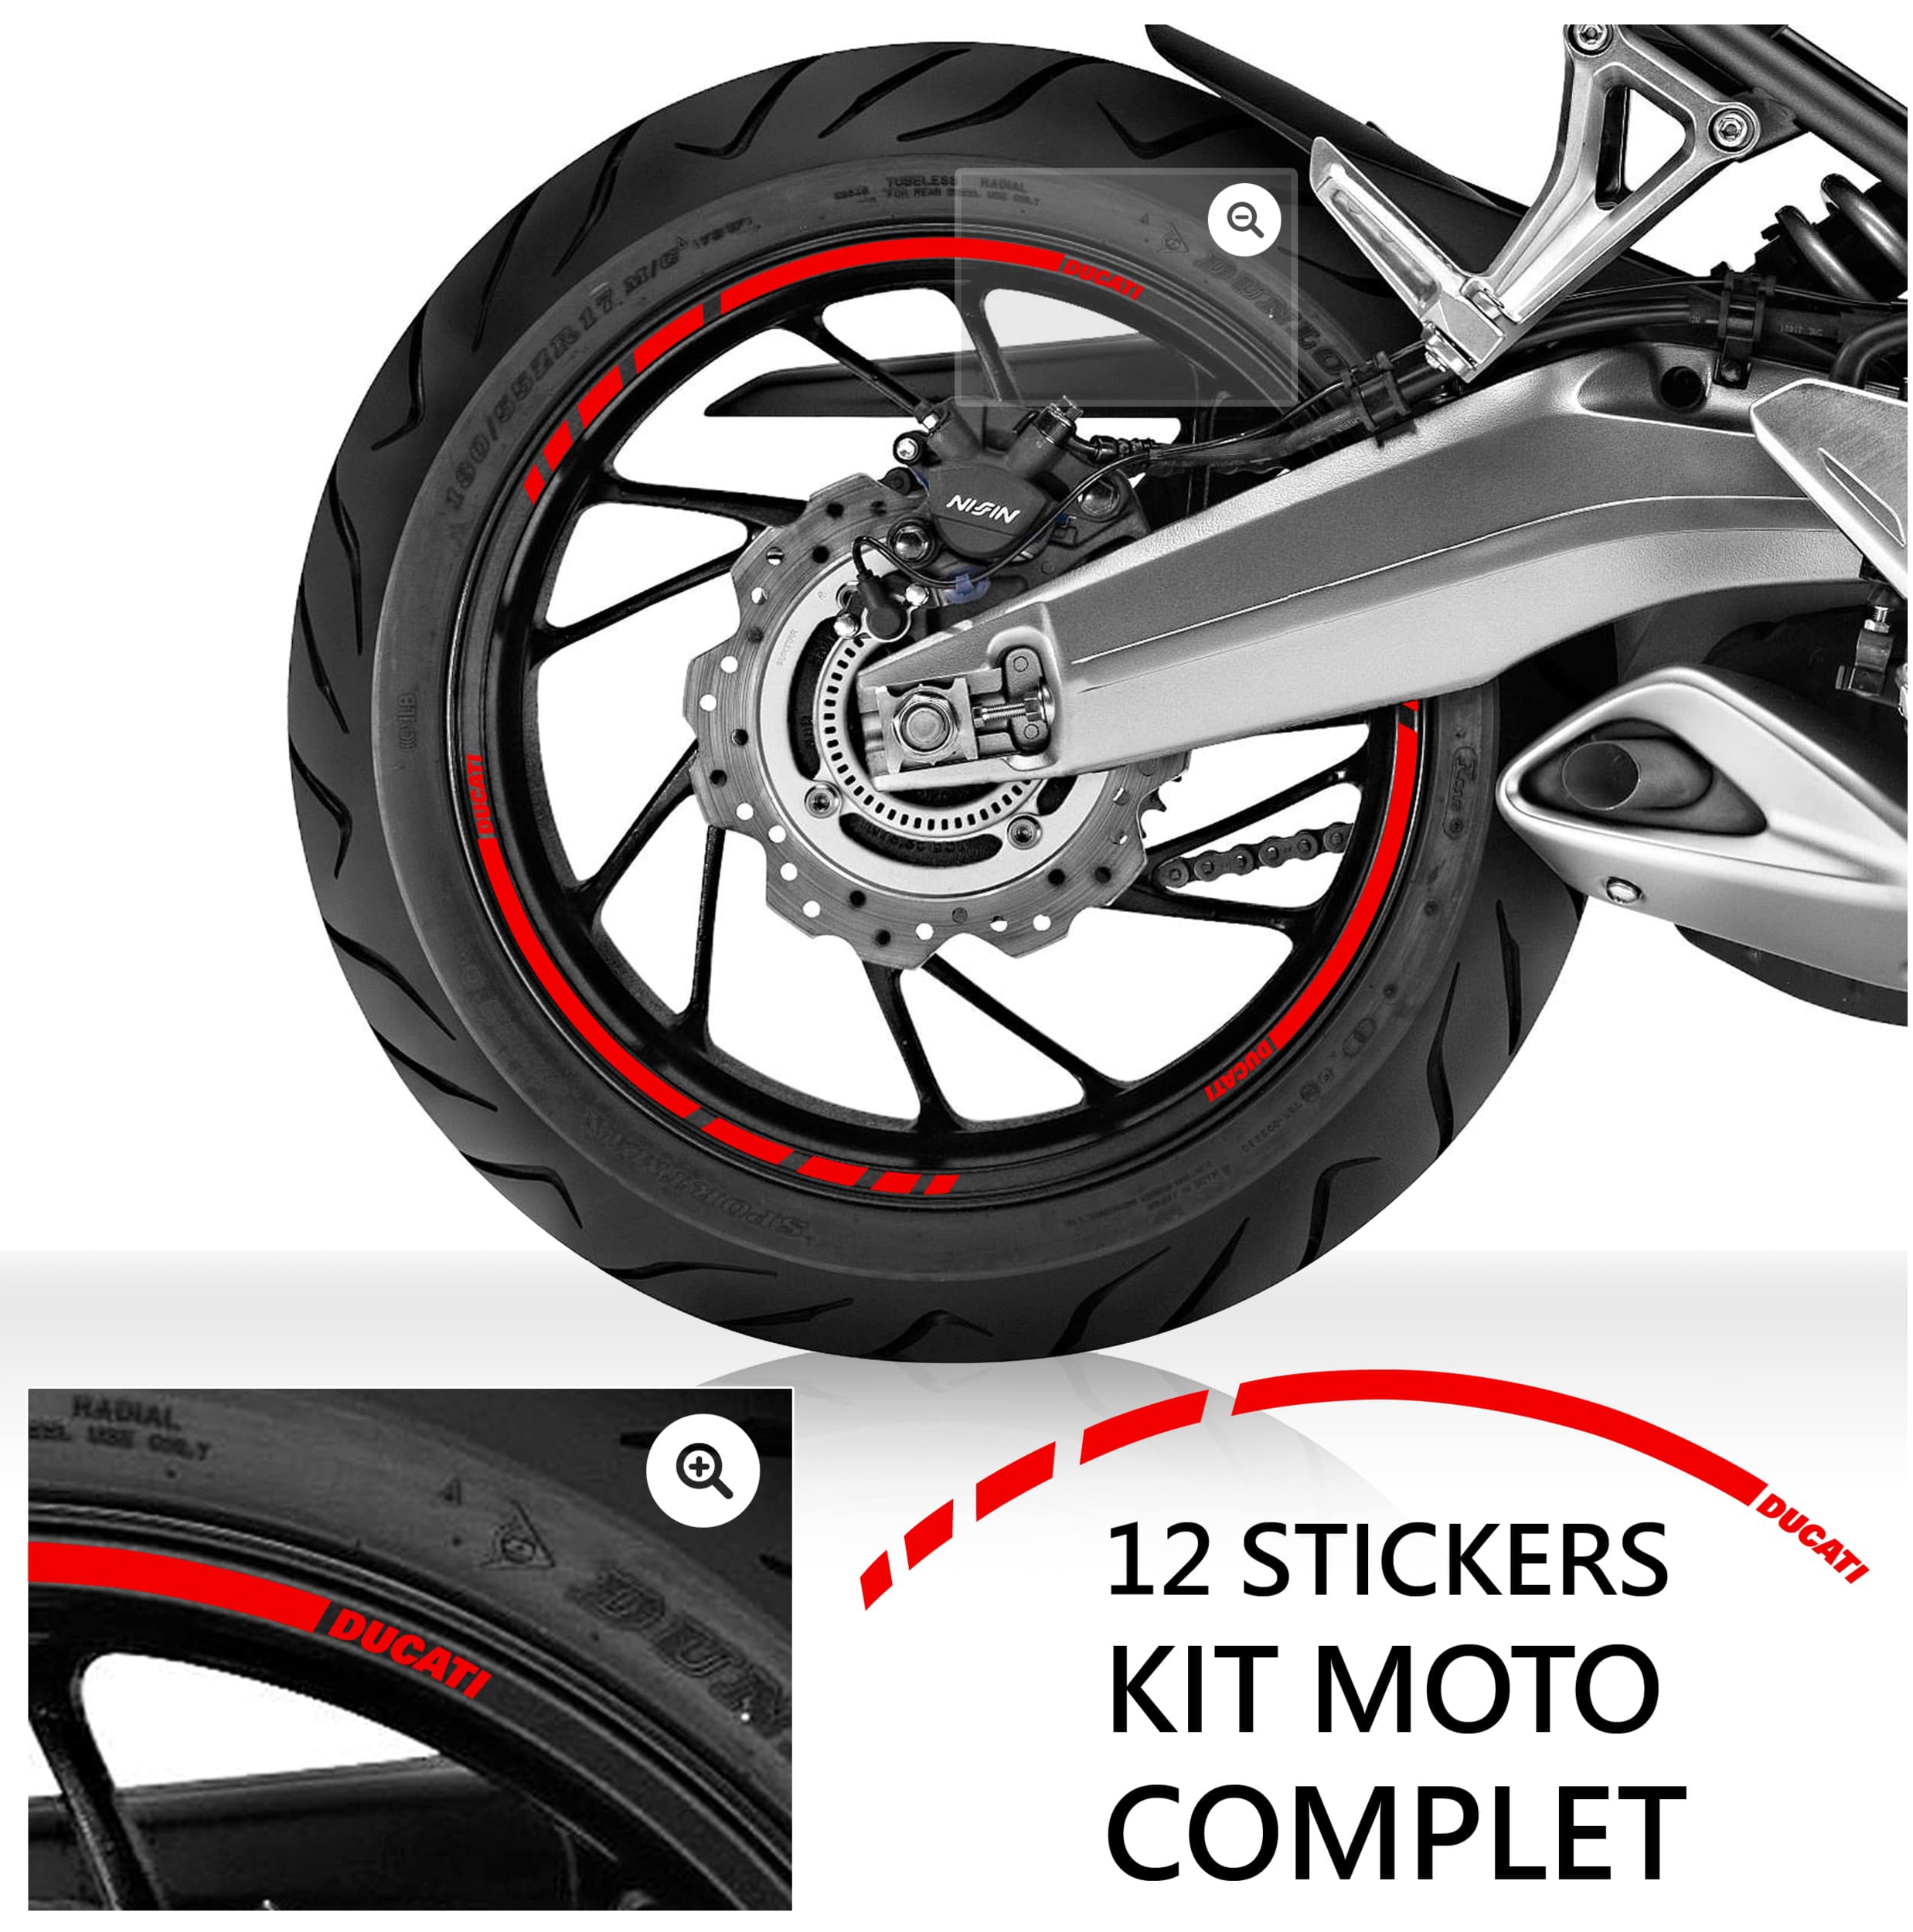 ref1 Kit 4 Stickers Retro Reflechissant Triumph Casque Moto autocollant